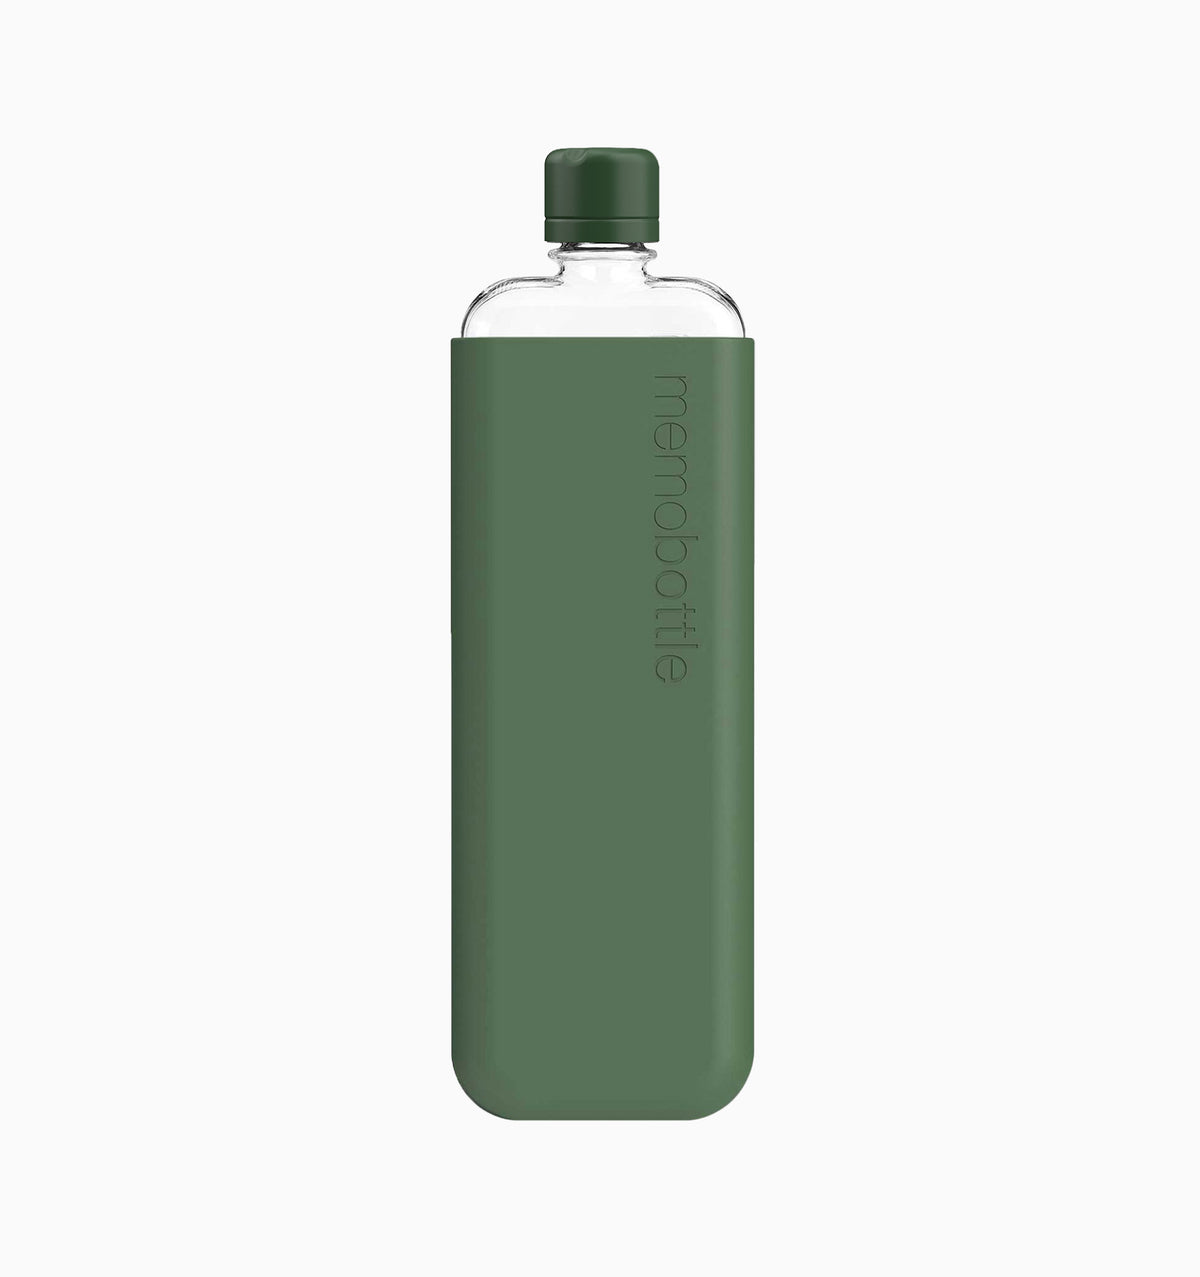 Memobottle Slim Water Bottle - Bundle - Moss Green